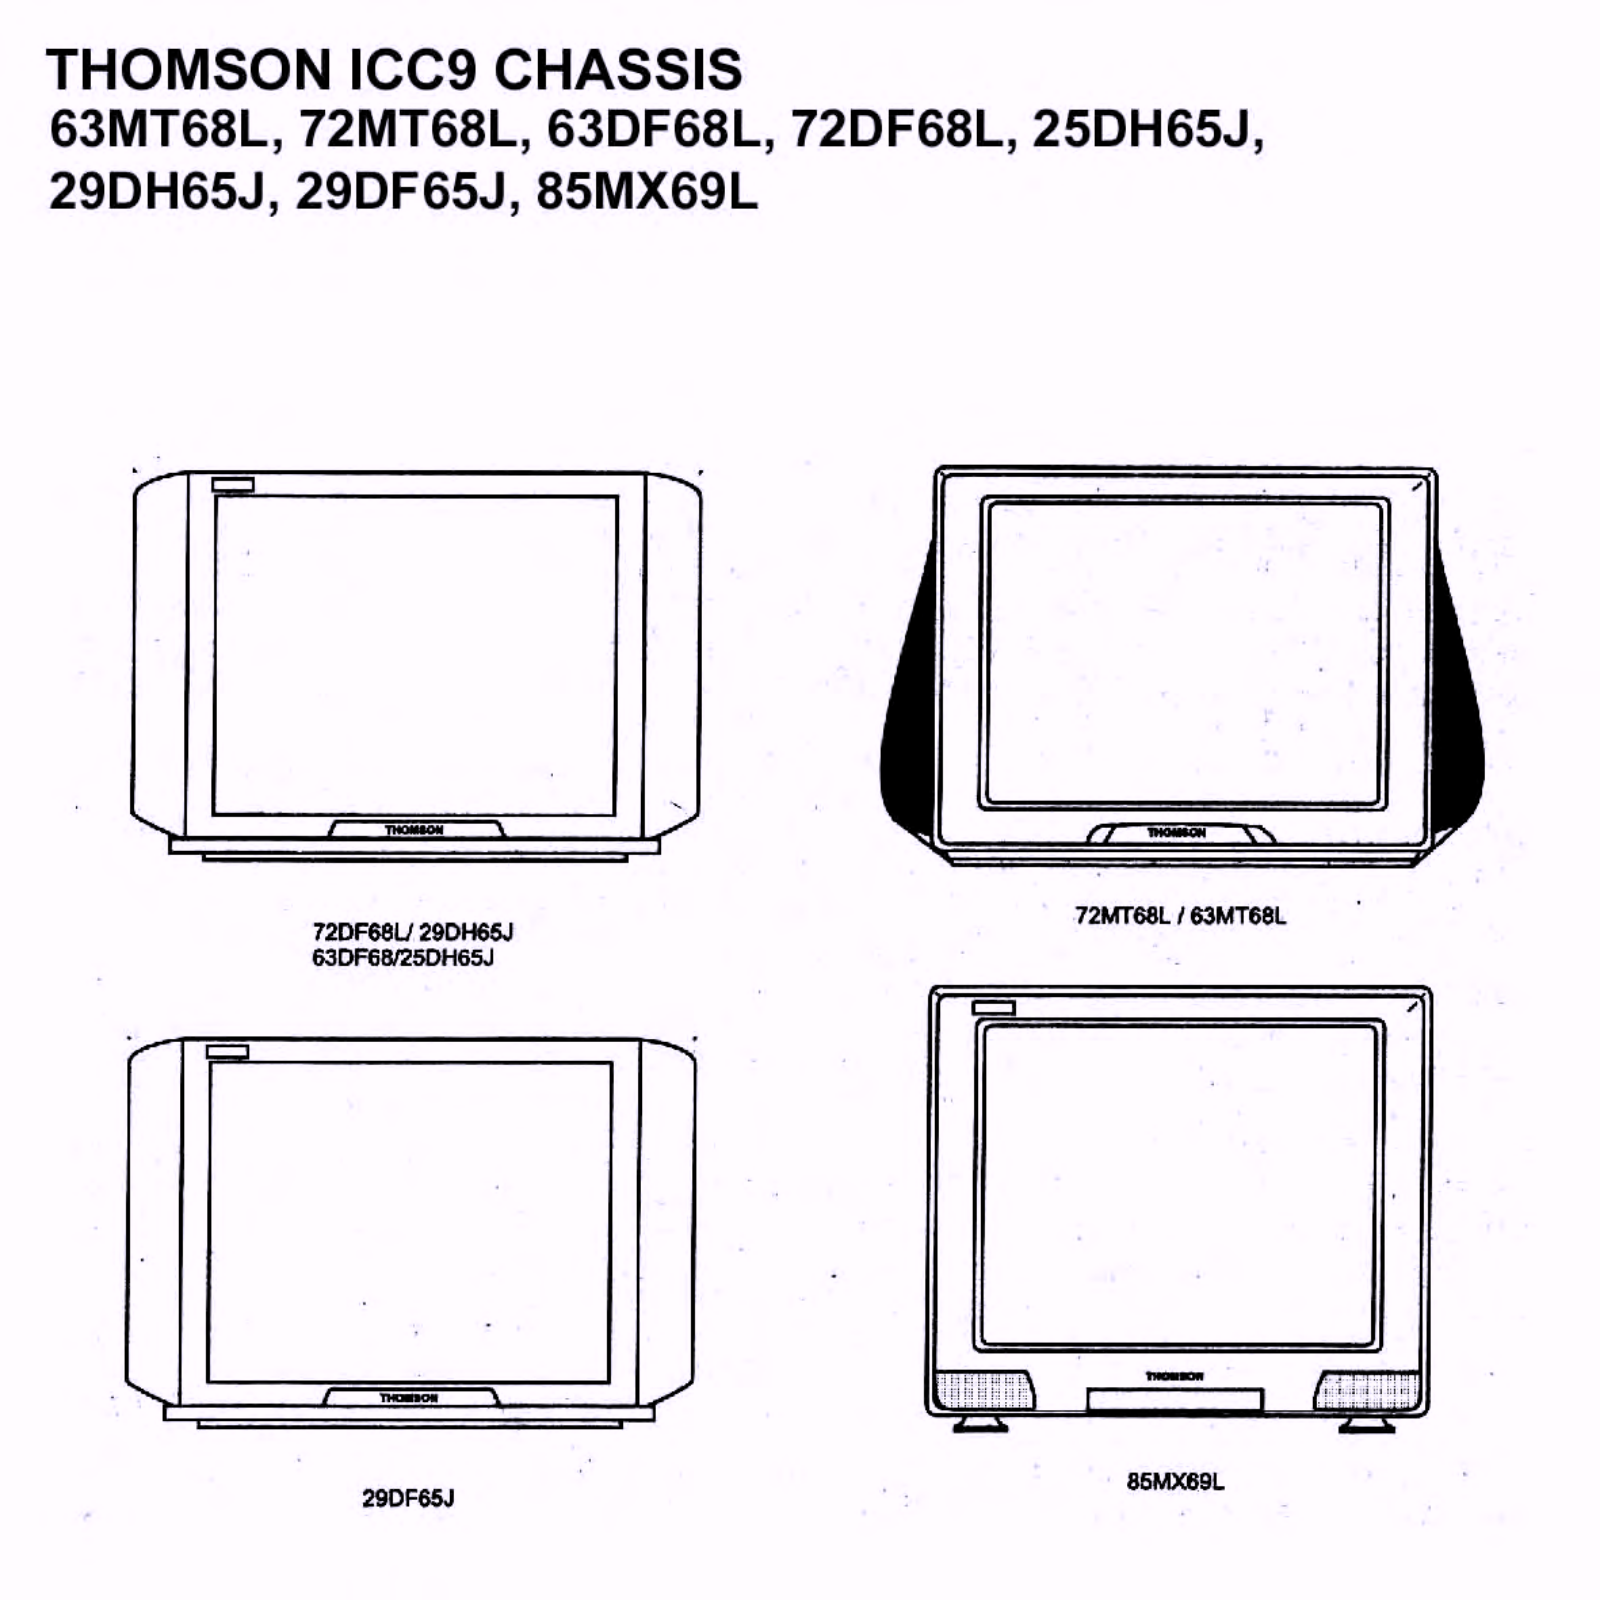 Thomson 85MX69L, 29DF65J, 29DH65J, 25DH65J, 72DF68L Cirquit Diagram